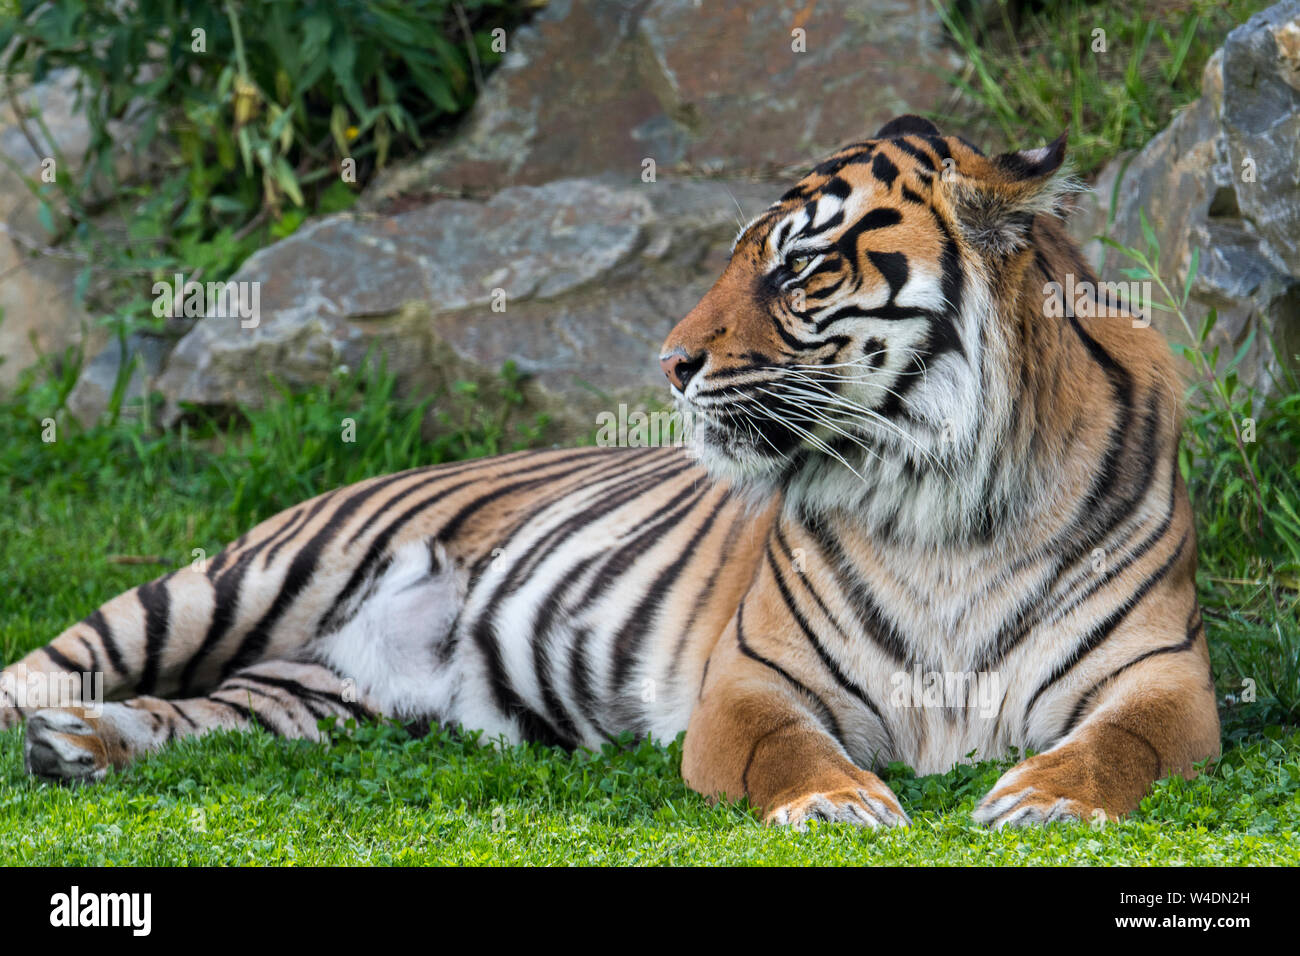 Tigre de Sumatra (Panthera tigris sondaica) indigènes de l'île indonésienne de Sumatra, Indonésie Banque D'Images